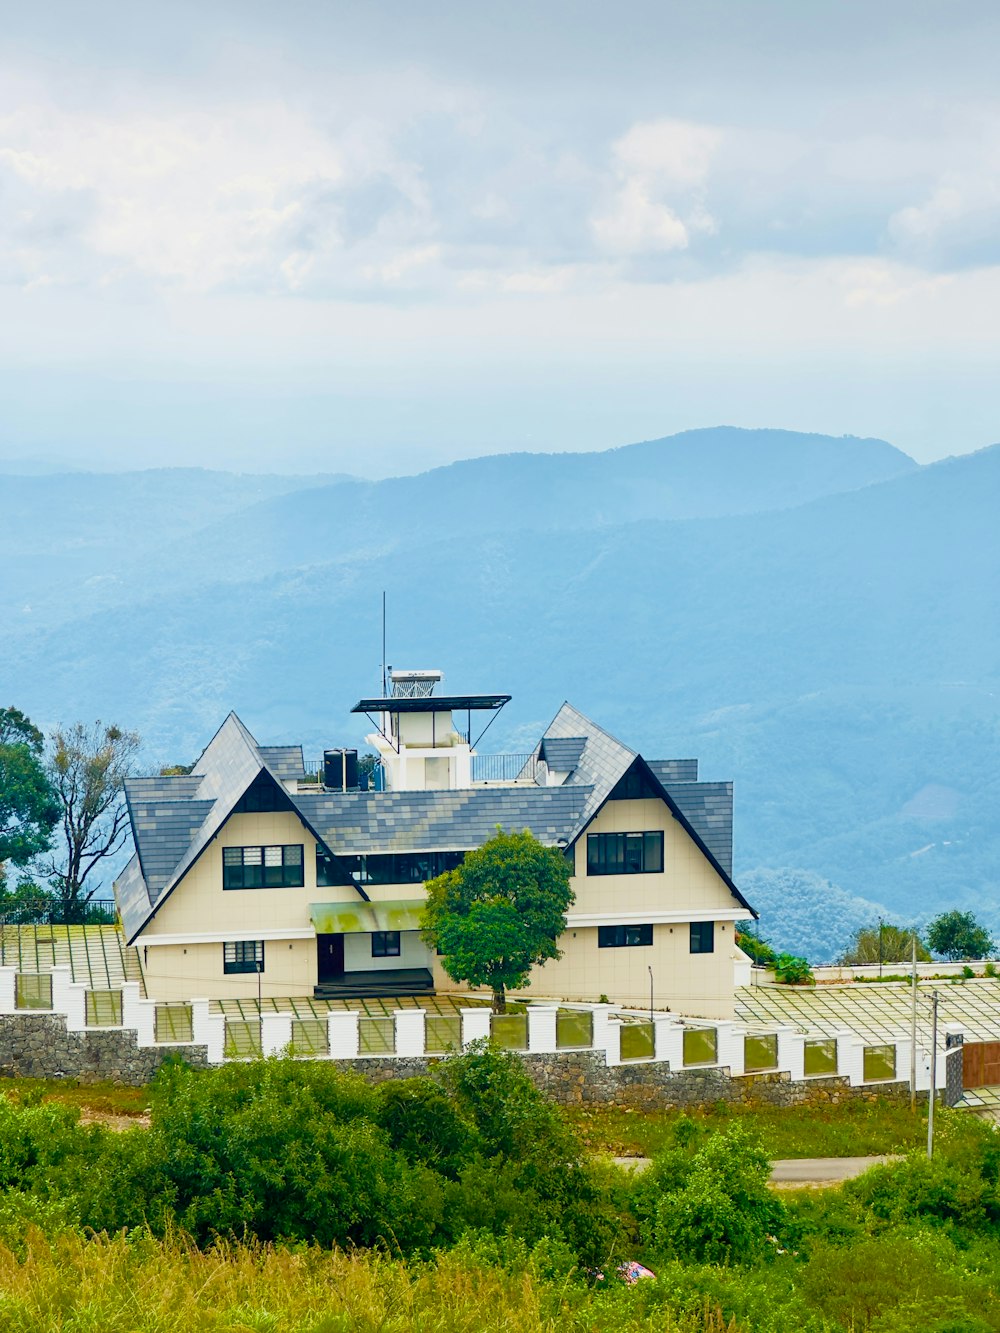 무성한 녹색 언덕 위에 자리 잡은 커다란 흰색 집